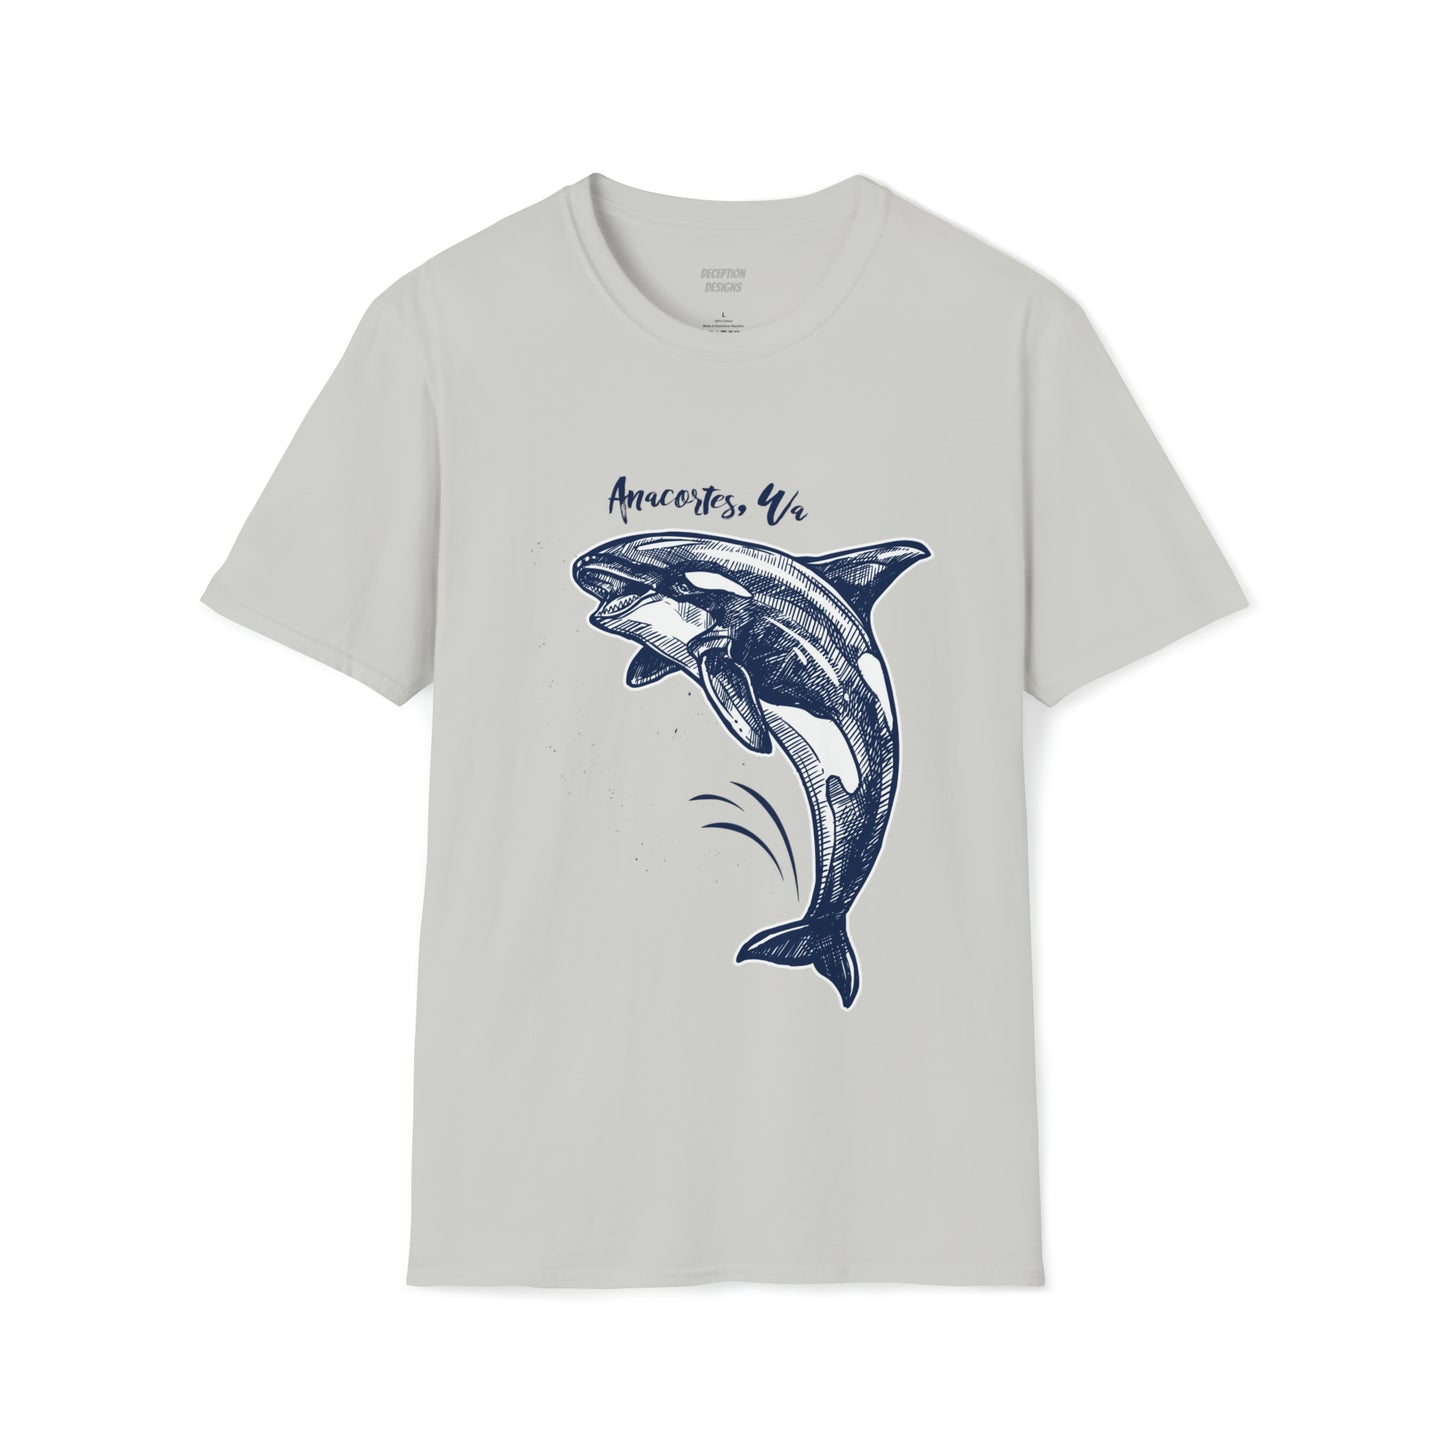 ORCA ANACORTES Unisex Softstyle T-Shirt